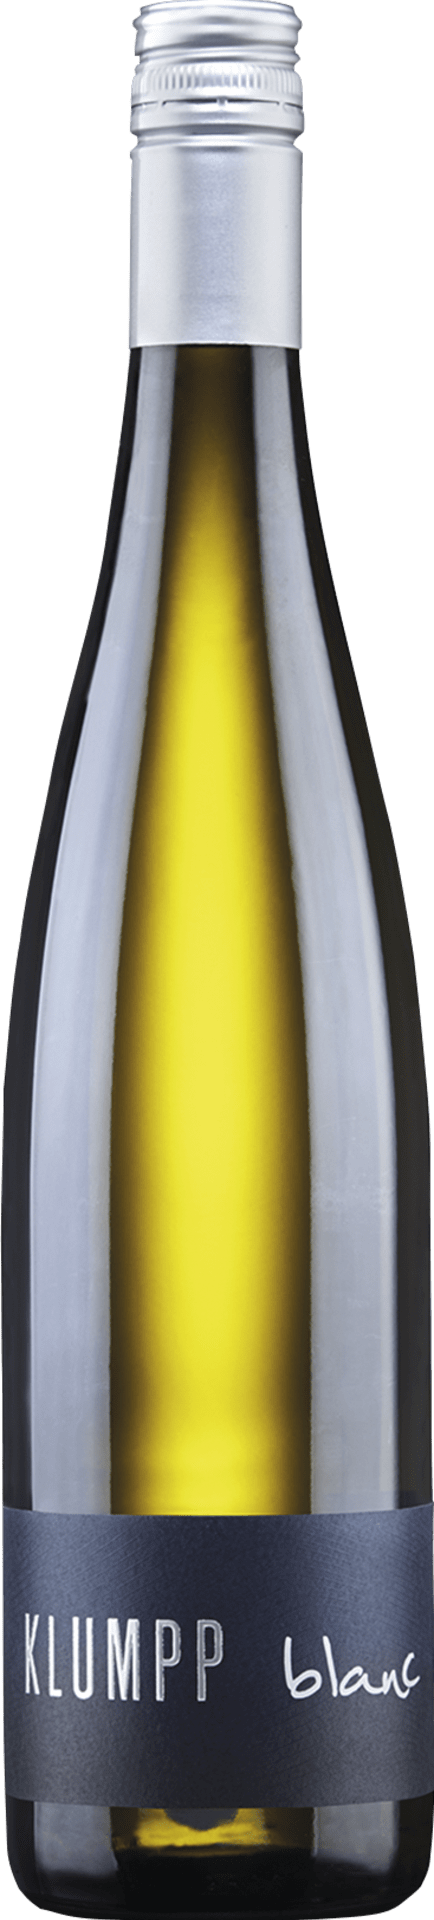 Cuvée Blanc Qualitätswein trocken